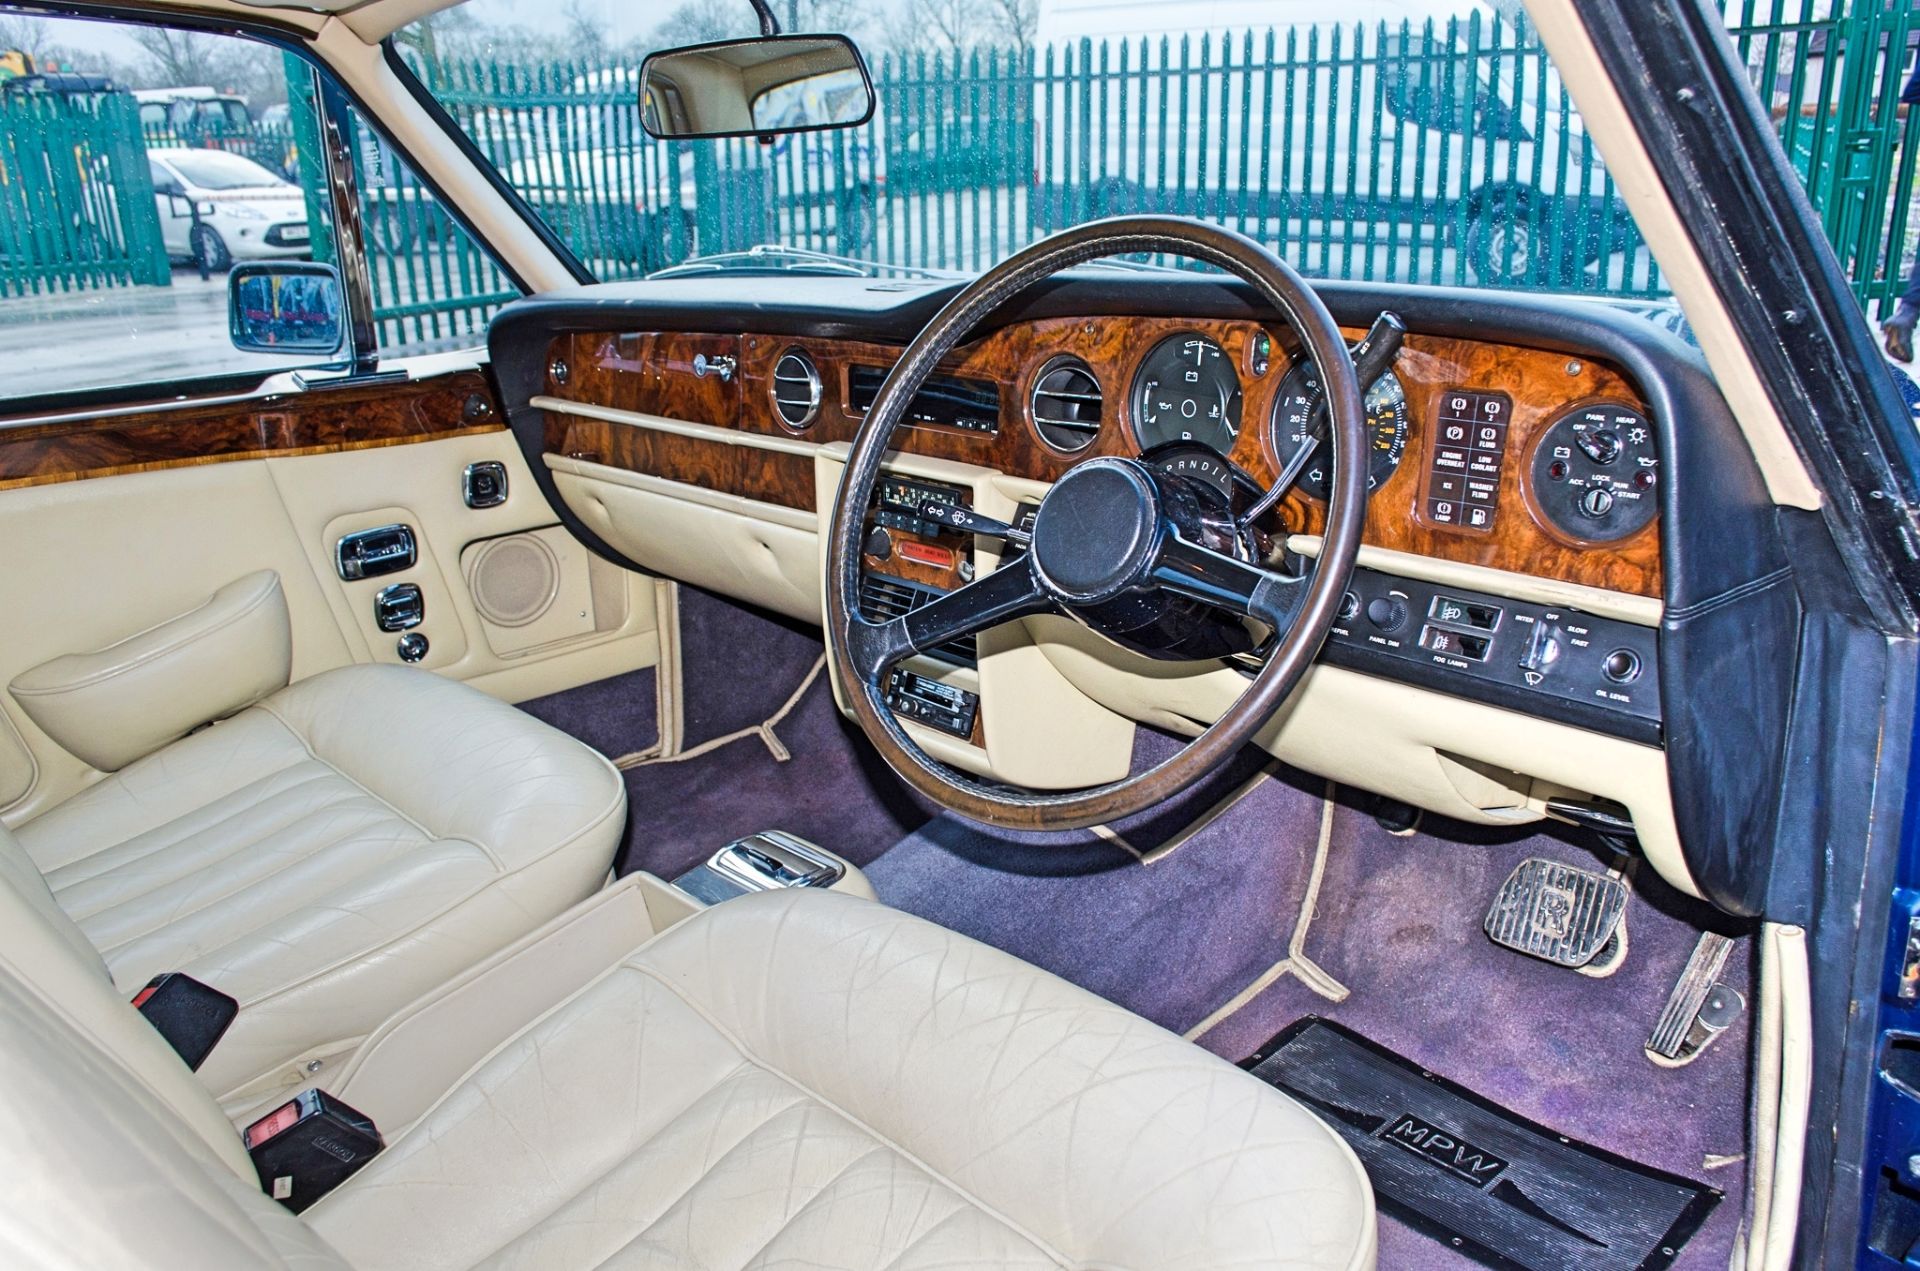 1981 Rolls-Royce Corniche 6.75 litre Series 5000 3 door fixed head coupe - Image 25 of 50